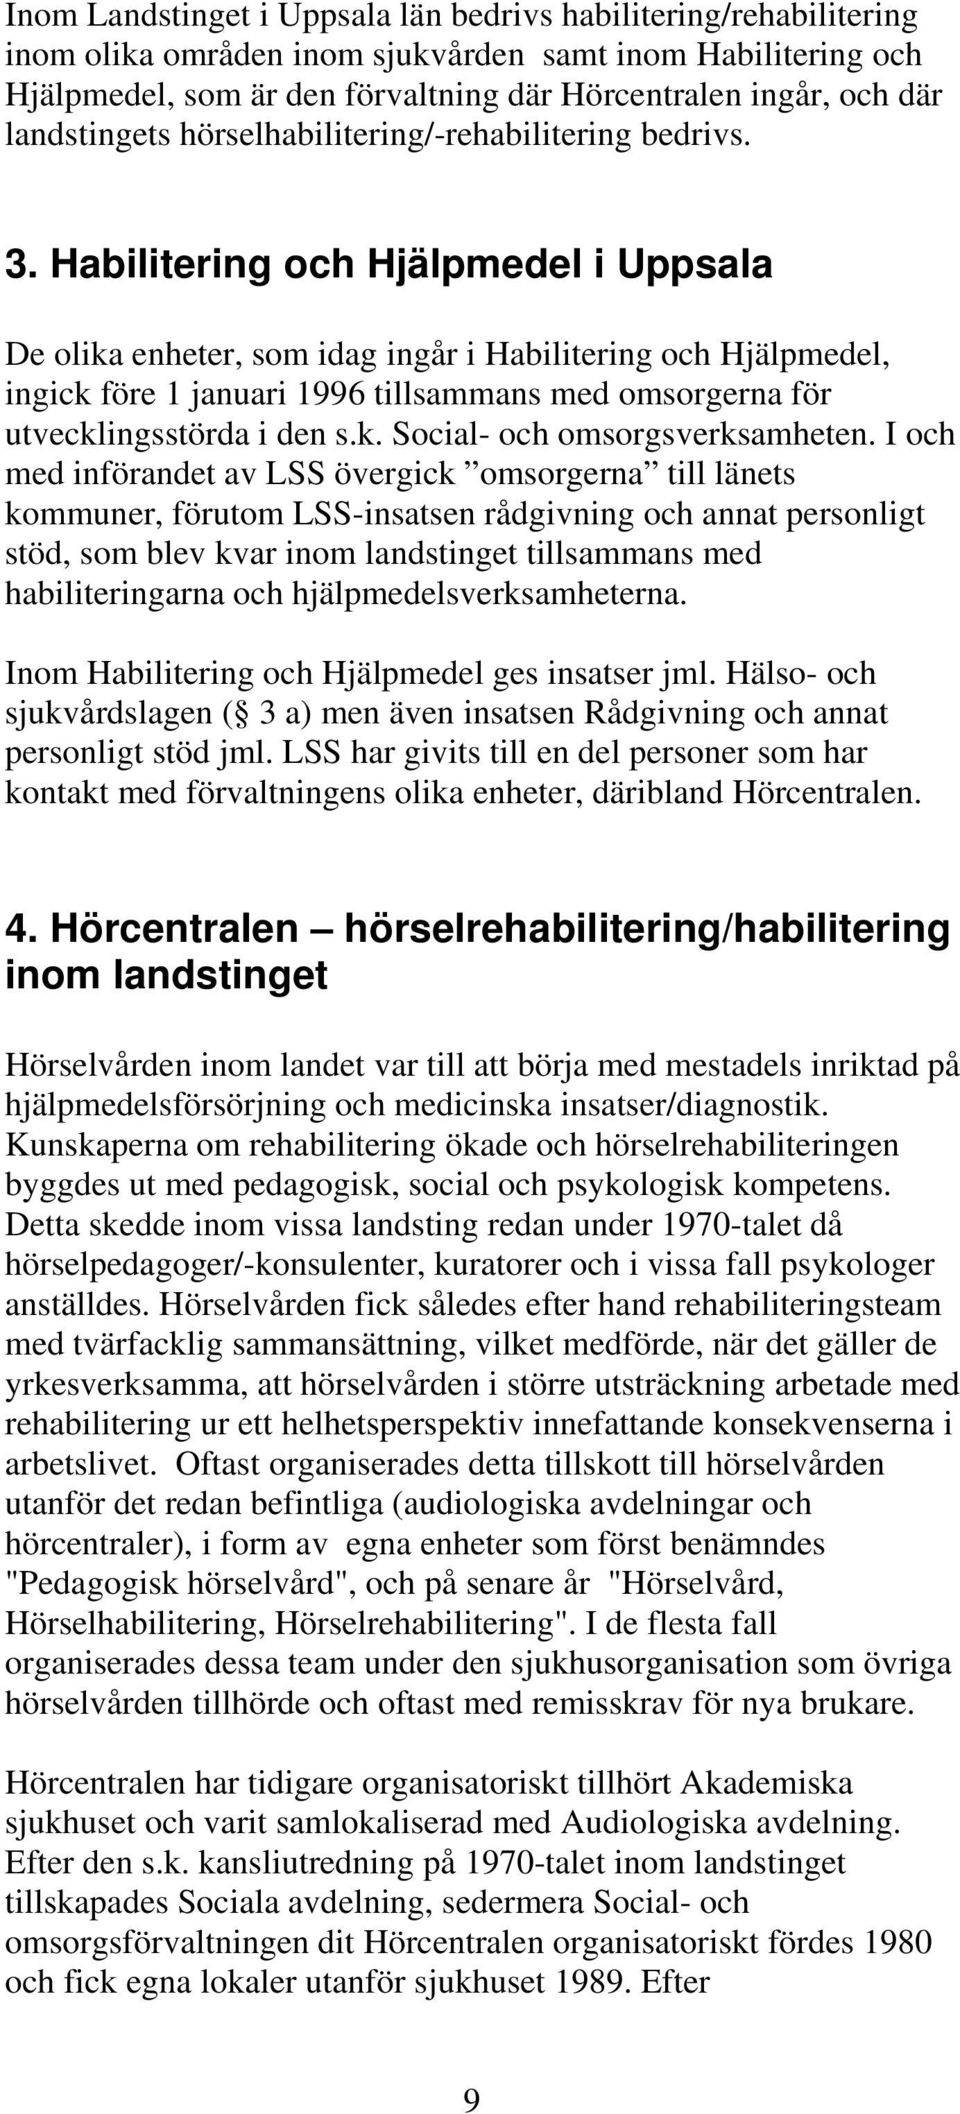 Habilitering och Hjälpmedel i Uppsala De olika enheter, som idag ingår i Habilitering och Hjälpmedel, ingick före 1 januari 1996 tillsammans med omsorgerna för utvecklingsstörda i den s.k. Social- och omsorgsverksamheten.